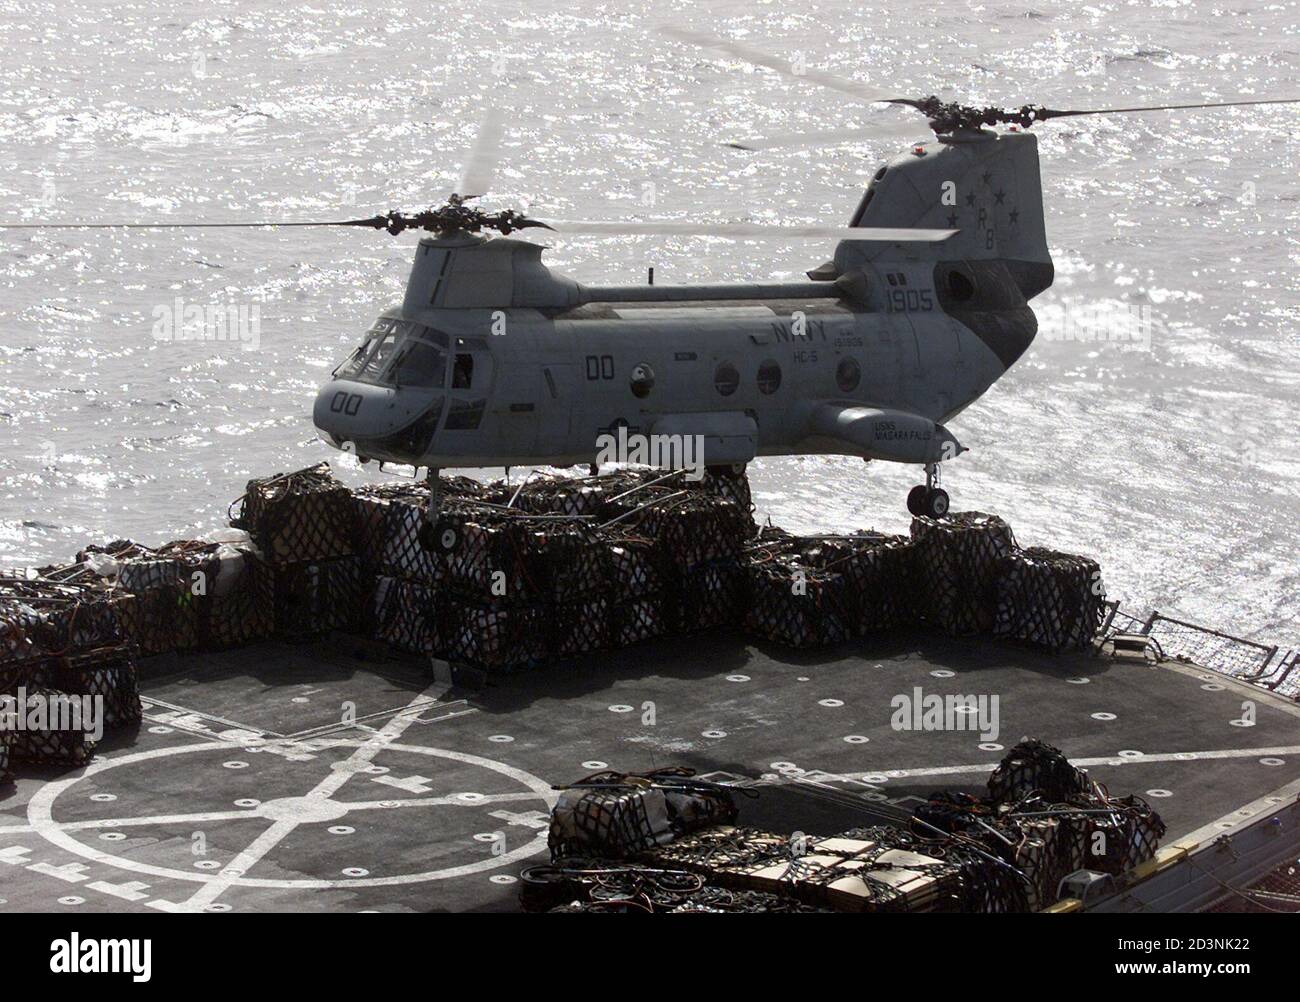 HELICÓPTERO ATERRIZA EN CUBIERTA DE USNS NIAGARA FALLS PARA VOLAR COMIDA Y MATERIAL A USS CARL VINSON PORTAAVIONES. Un helicóptero CH-46 sea Knight aterriza en la cubierta de USNS Niagara Falls para volar comida y material al portaaviones USS Carl Vinson en el mar Arábigo 12 de octubre de 2001. El presidente estadounidense George W. Bush ofreció al gobernante talibán de Afganistán una última oportunidad para entregar a Osama bin Ladenas los musulmanes del mundo realizaron sus primeras oraciones desde que lanzó ataques aéreos contra las fortalezas de los talibanes. REUTERS/Rubén Sprich Foto de stock